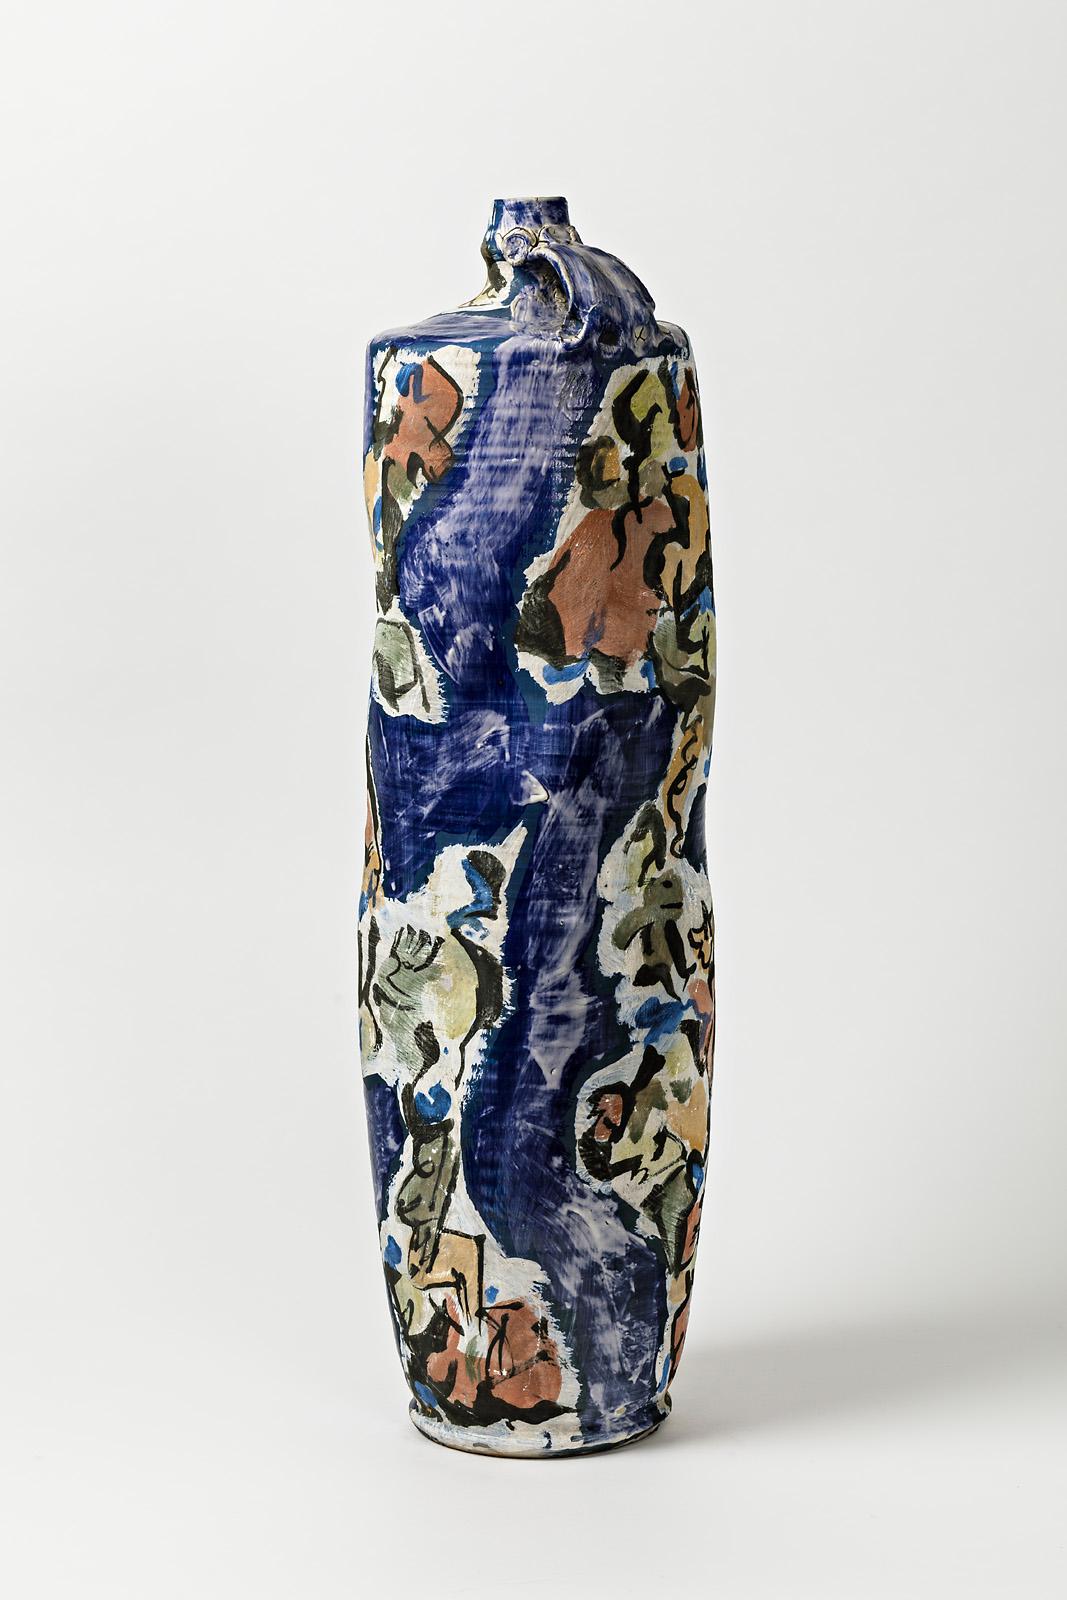 Großer Keramikkrug mit Glasurdekor von Michel Lanos (1926-2005).
Perfekte originelle Dekorationen.
Künstlermonogramm unter dem Sockel,
um 1990.
Einzigartiges Stück.